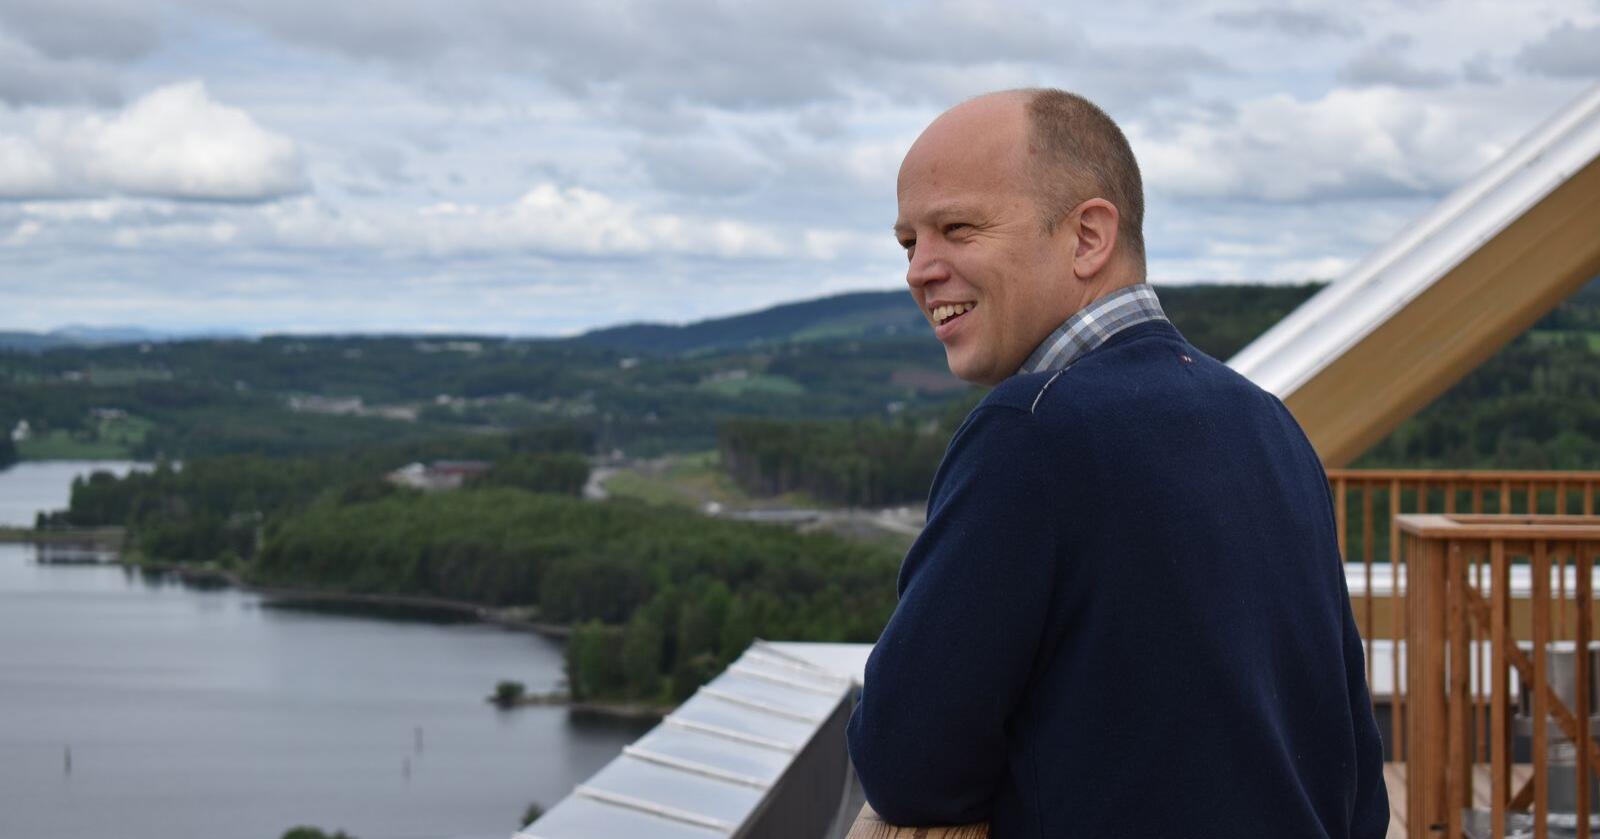 Senterparti-leder Trygve Slagsvold Vedum kan nesten se Mjøsbrua fra toppen av Mjøstårnet i Brumunddal. Snart er begge symboler på hans ønskepolitikk. Foto: Henrik Heldahl